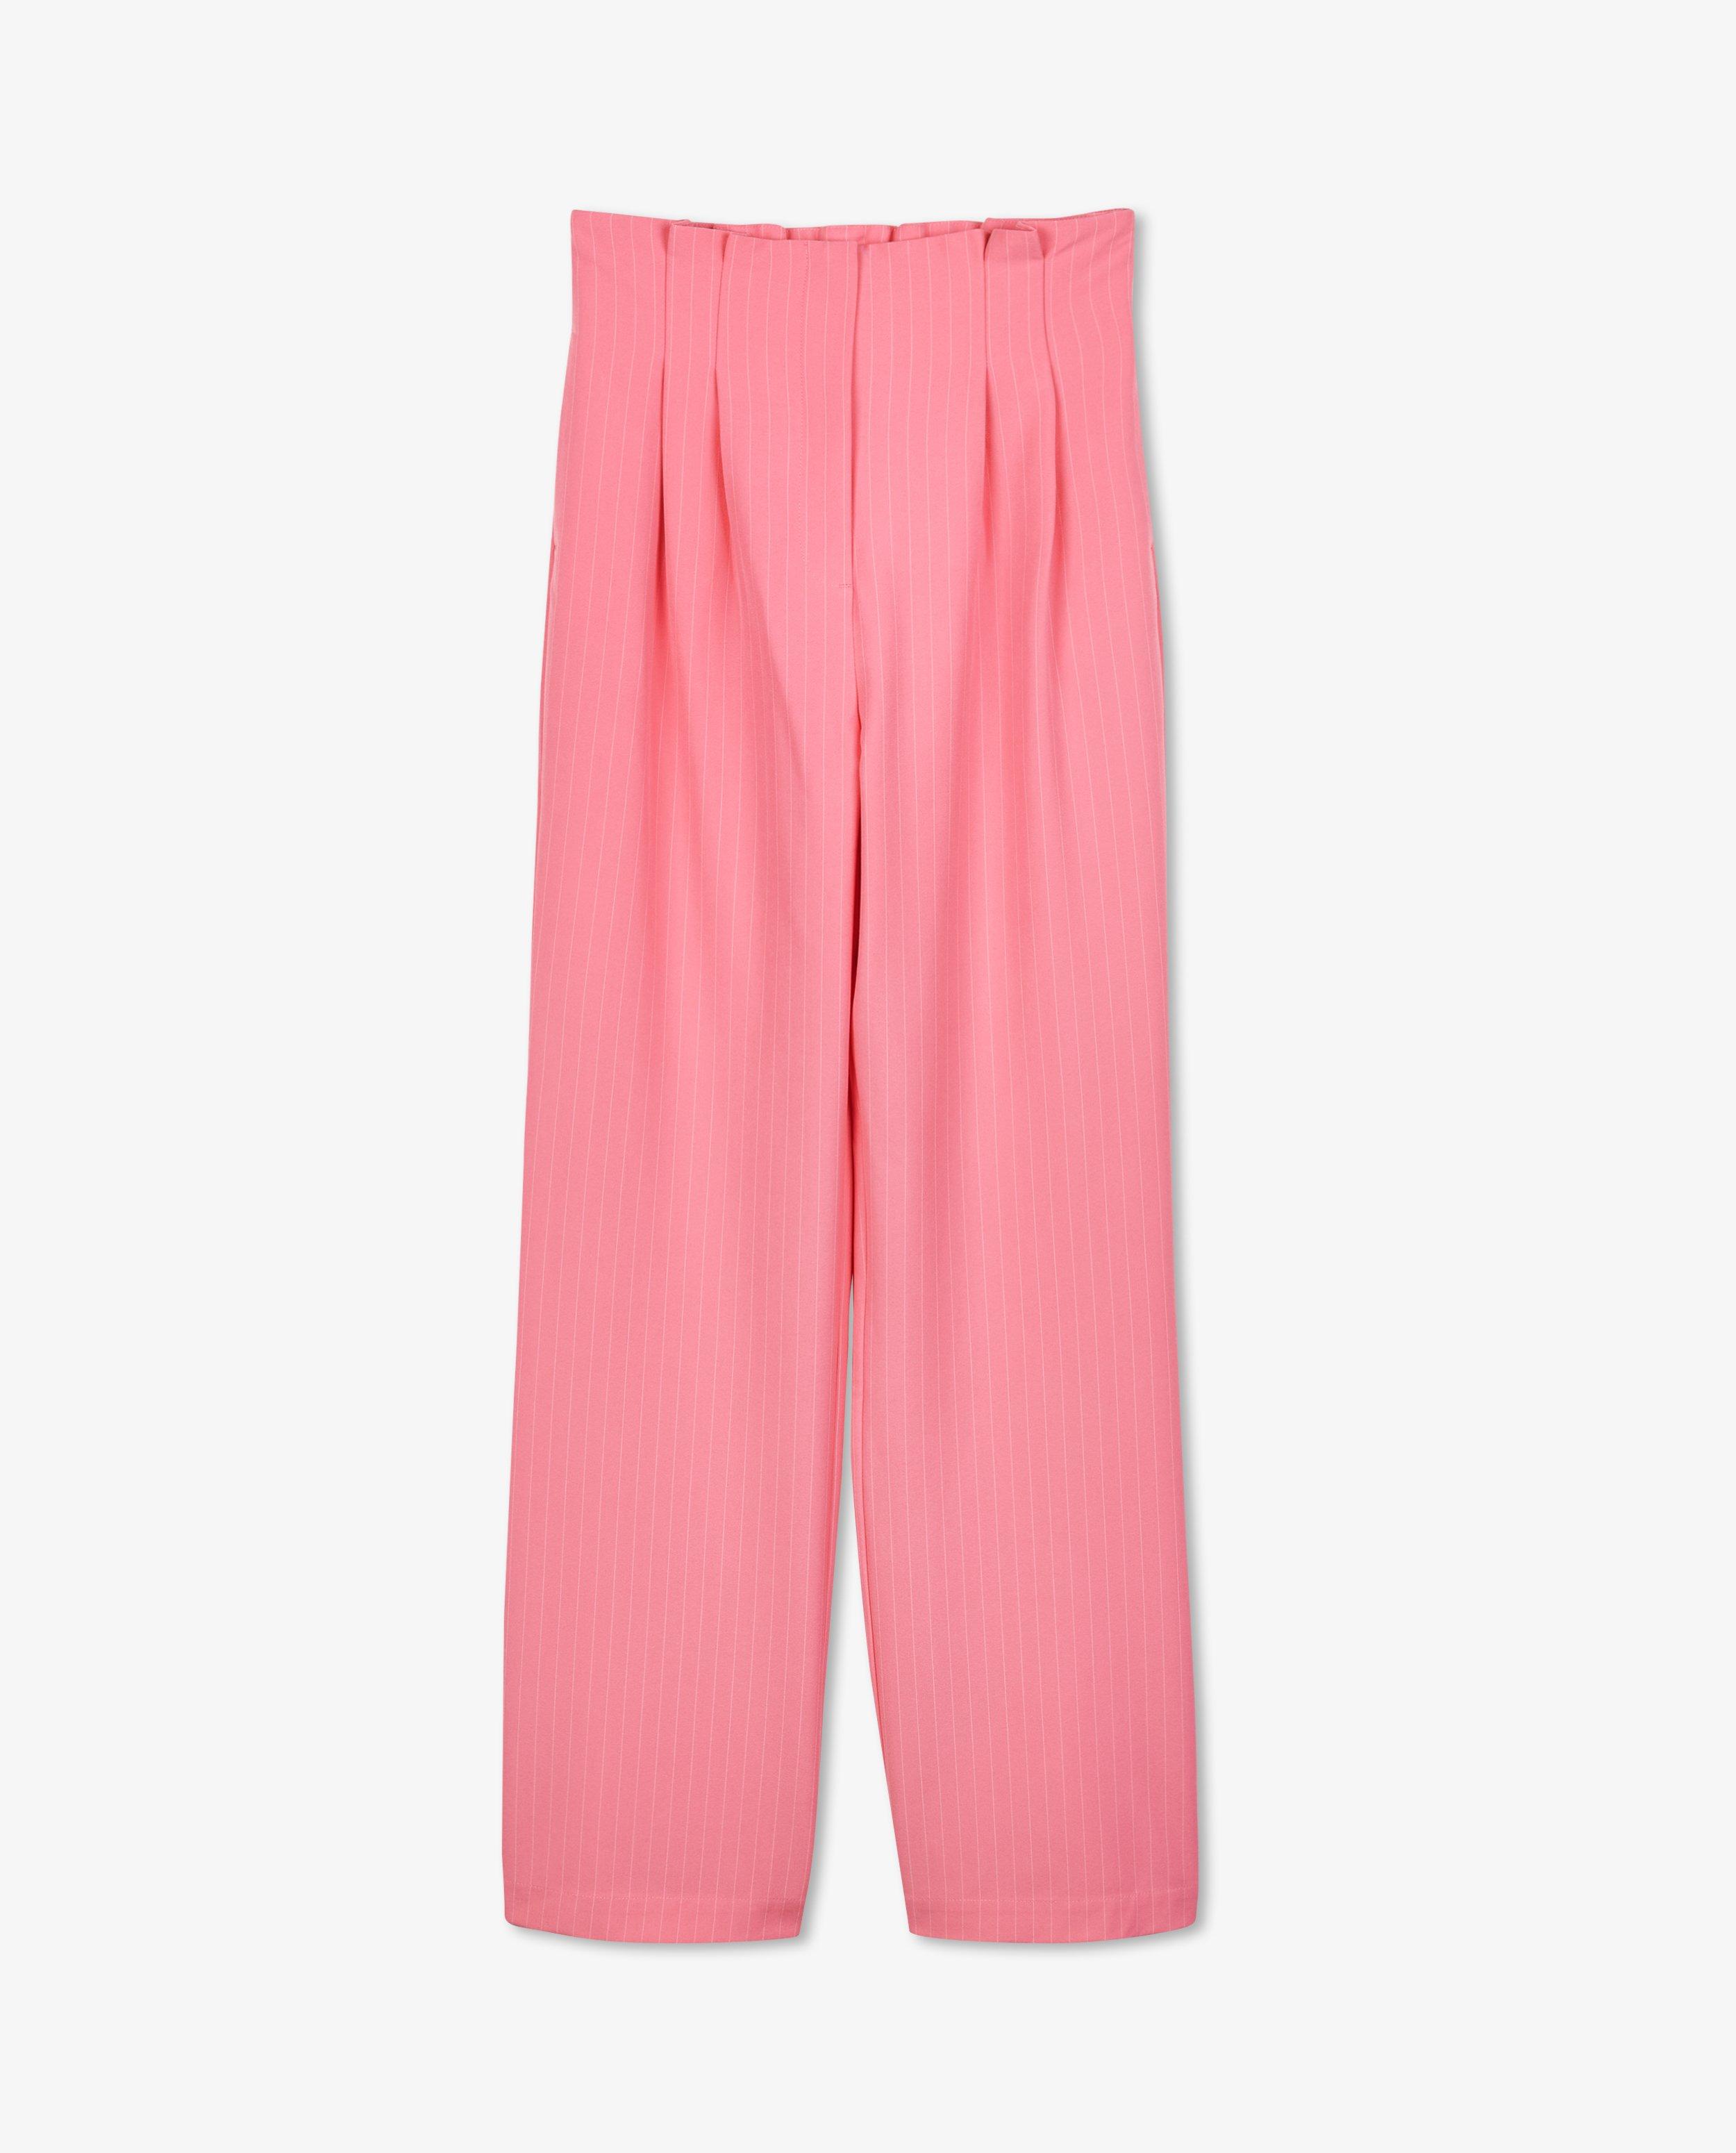 Pantalons - Pantalon rose à rayures